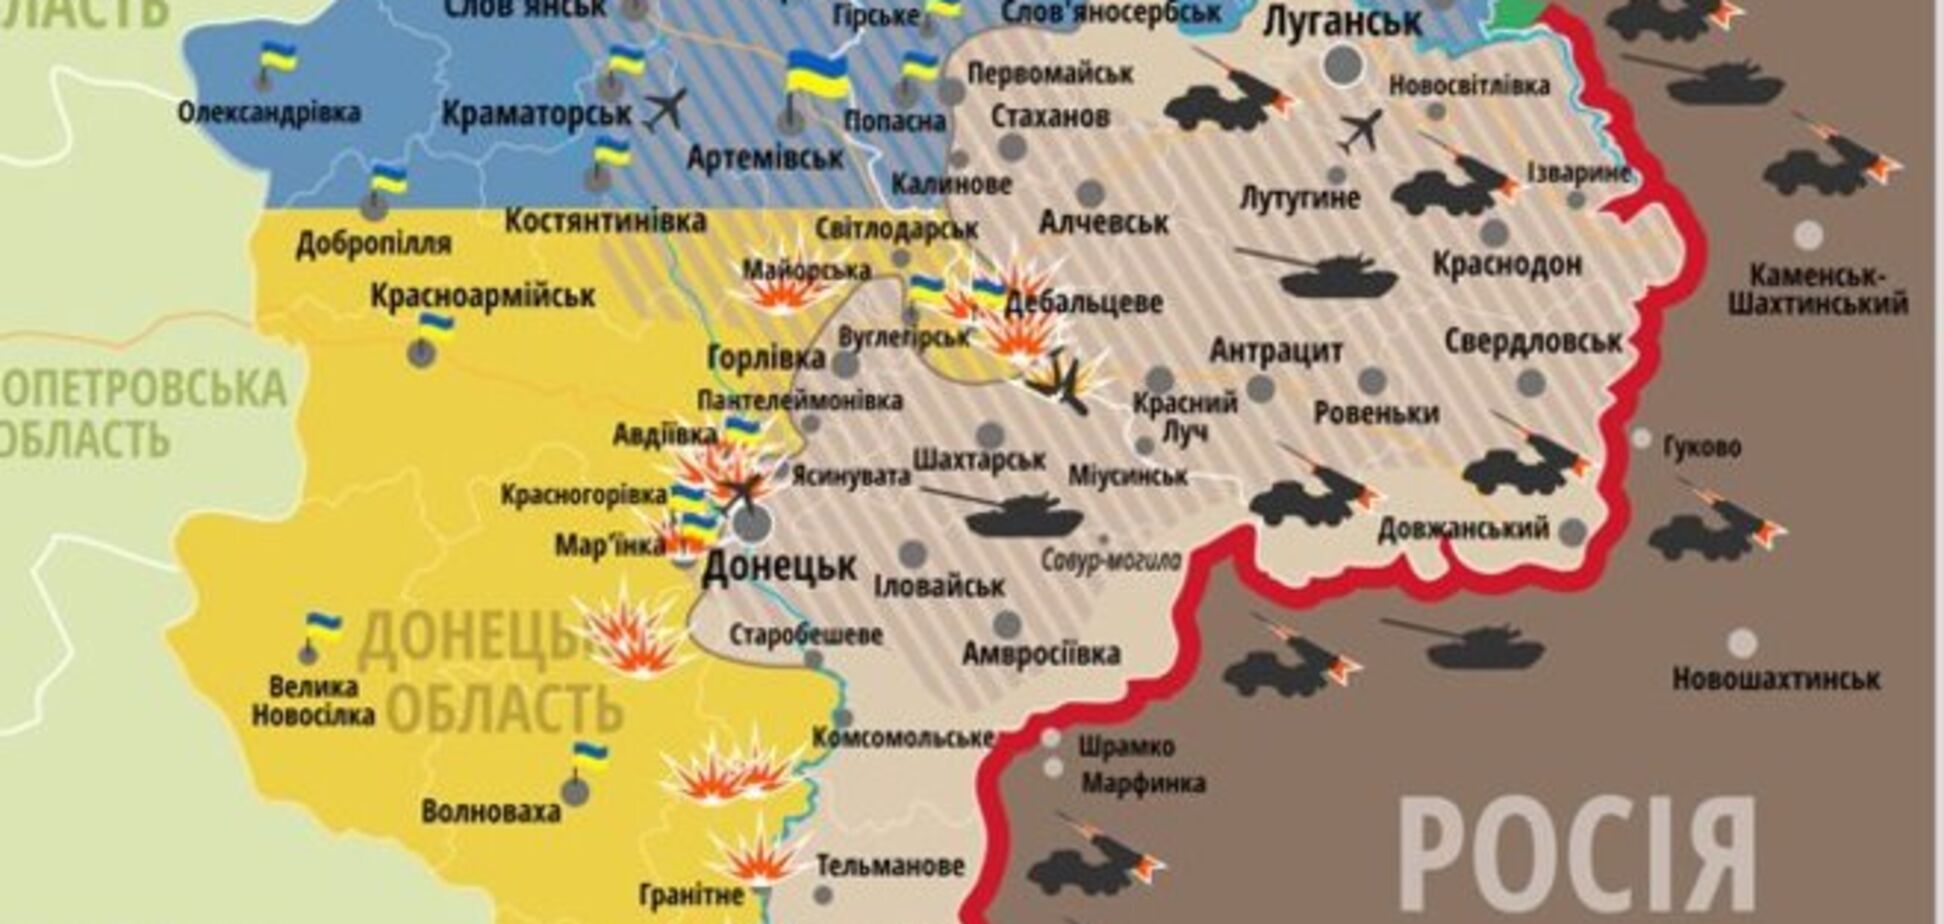 Кабмин утвердил перечень неподконтрольных Киеву населенных пунктов на Донбассе